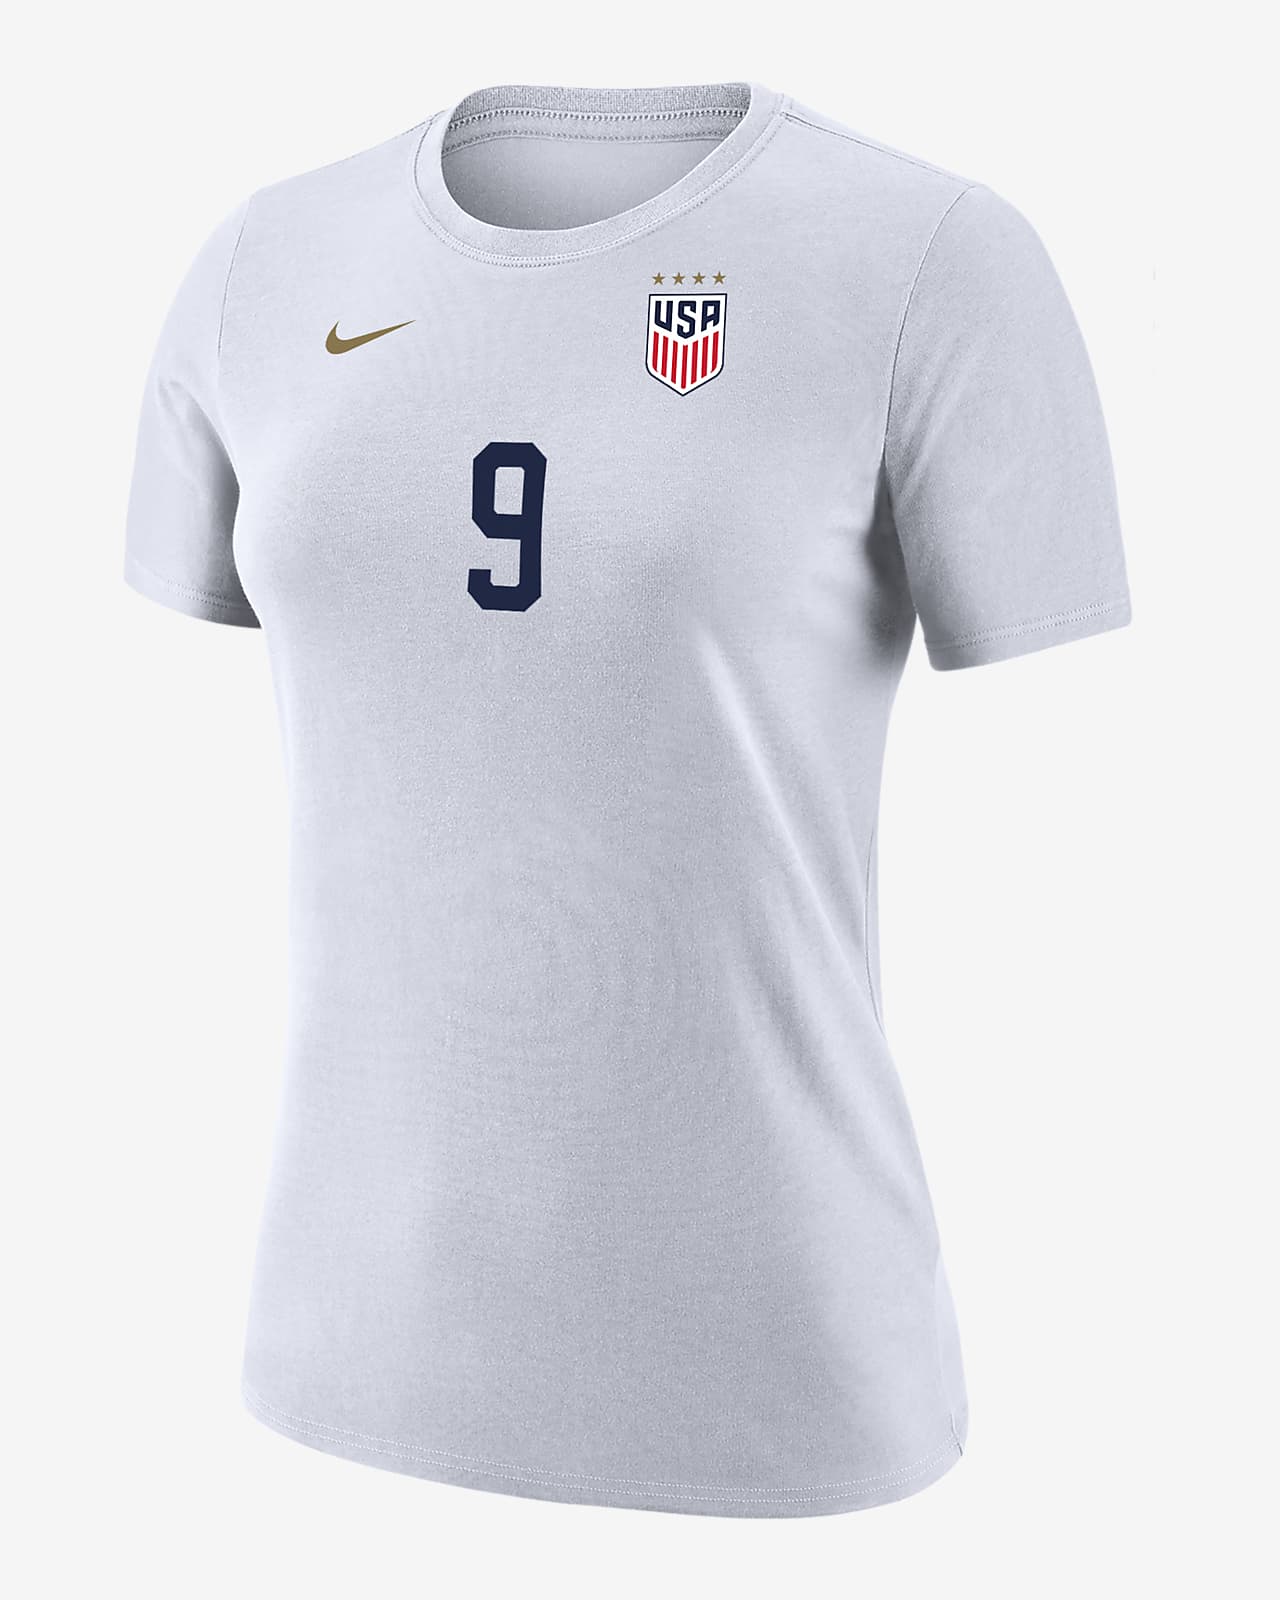 Mallory Swanson USWNT Women's Nike Soccer T-Shirt